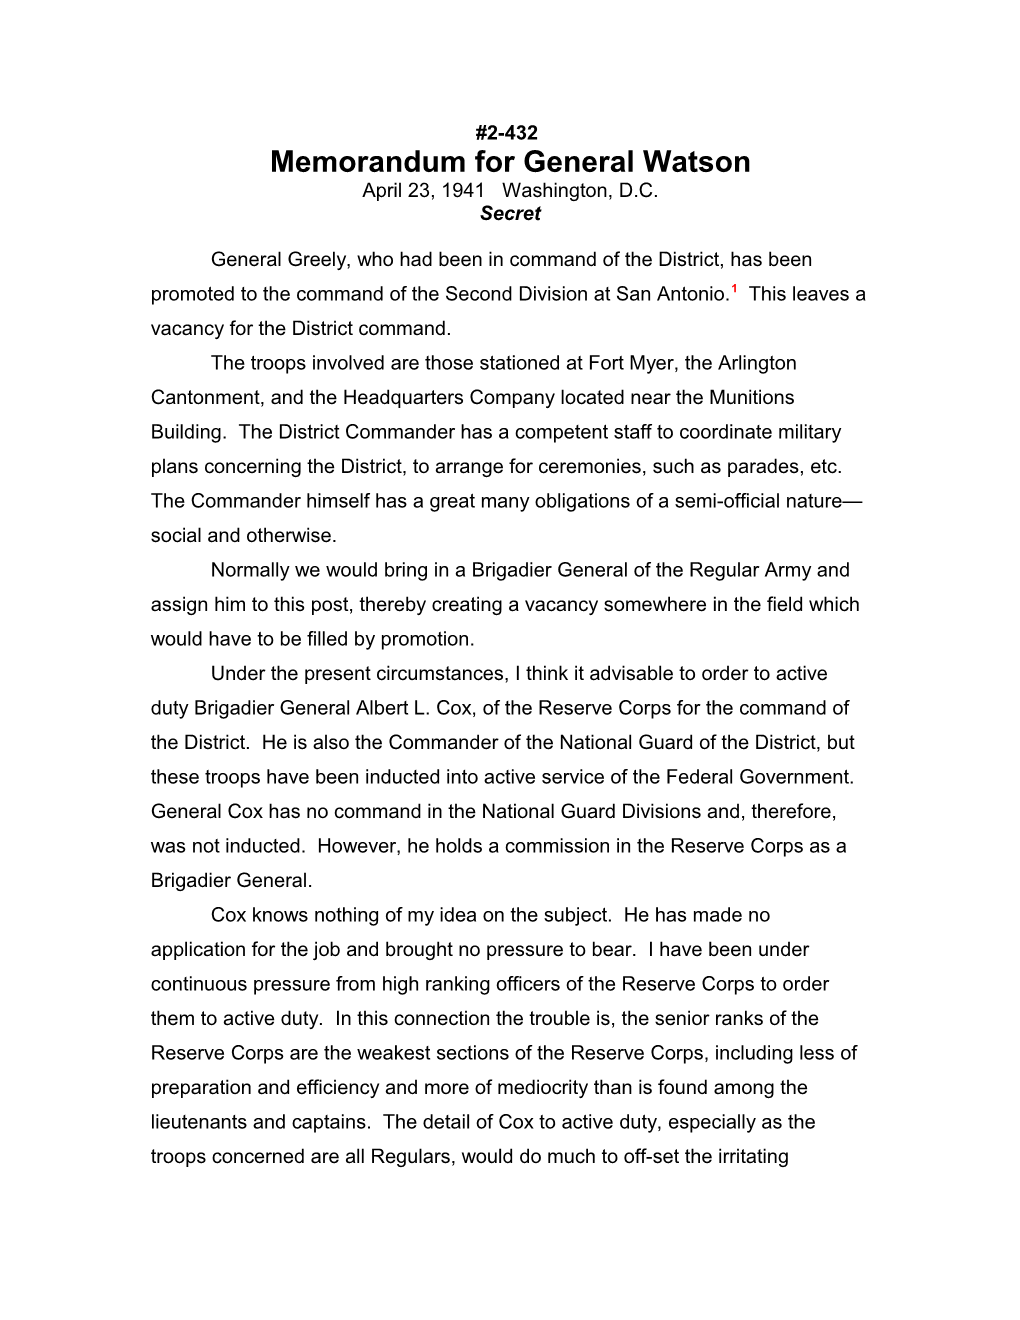 Memorandum for General Watson